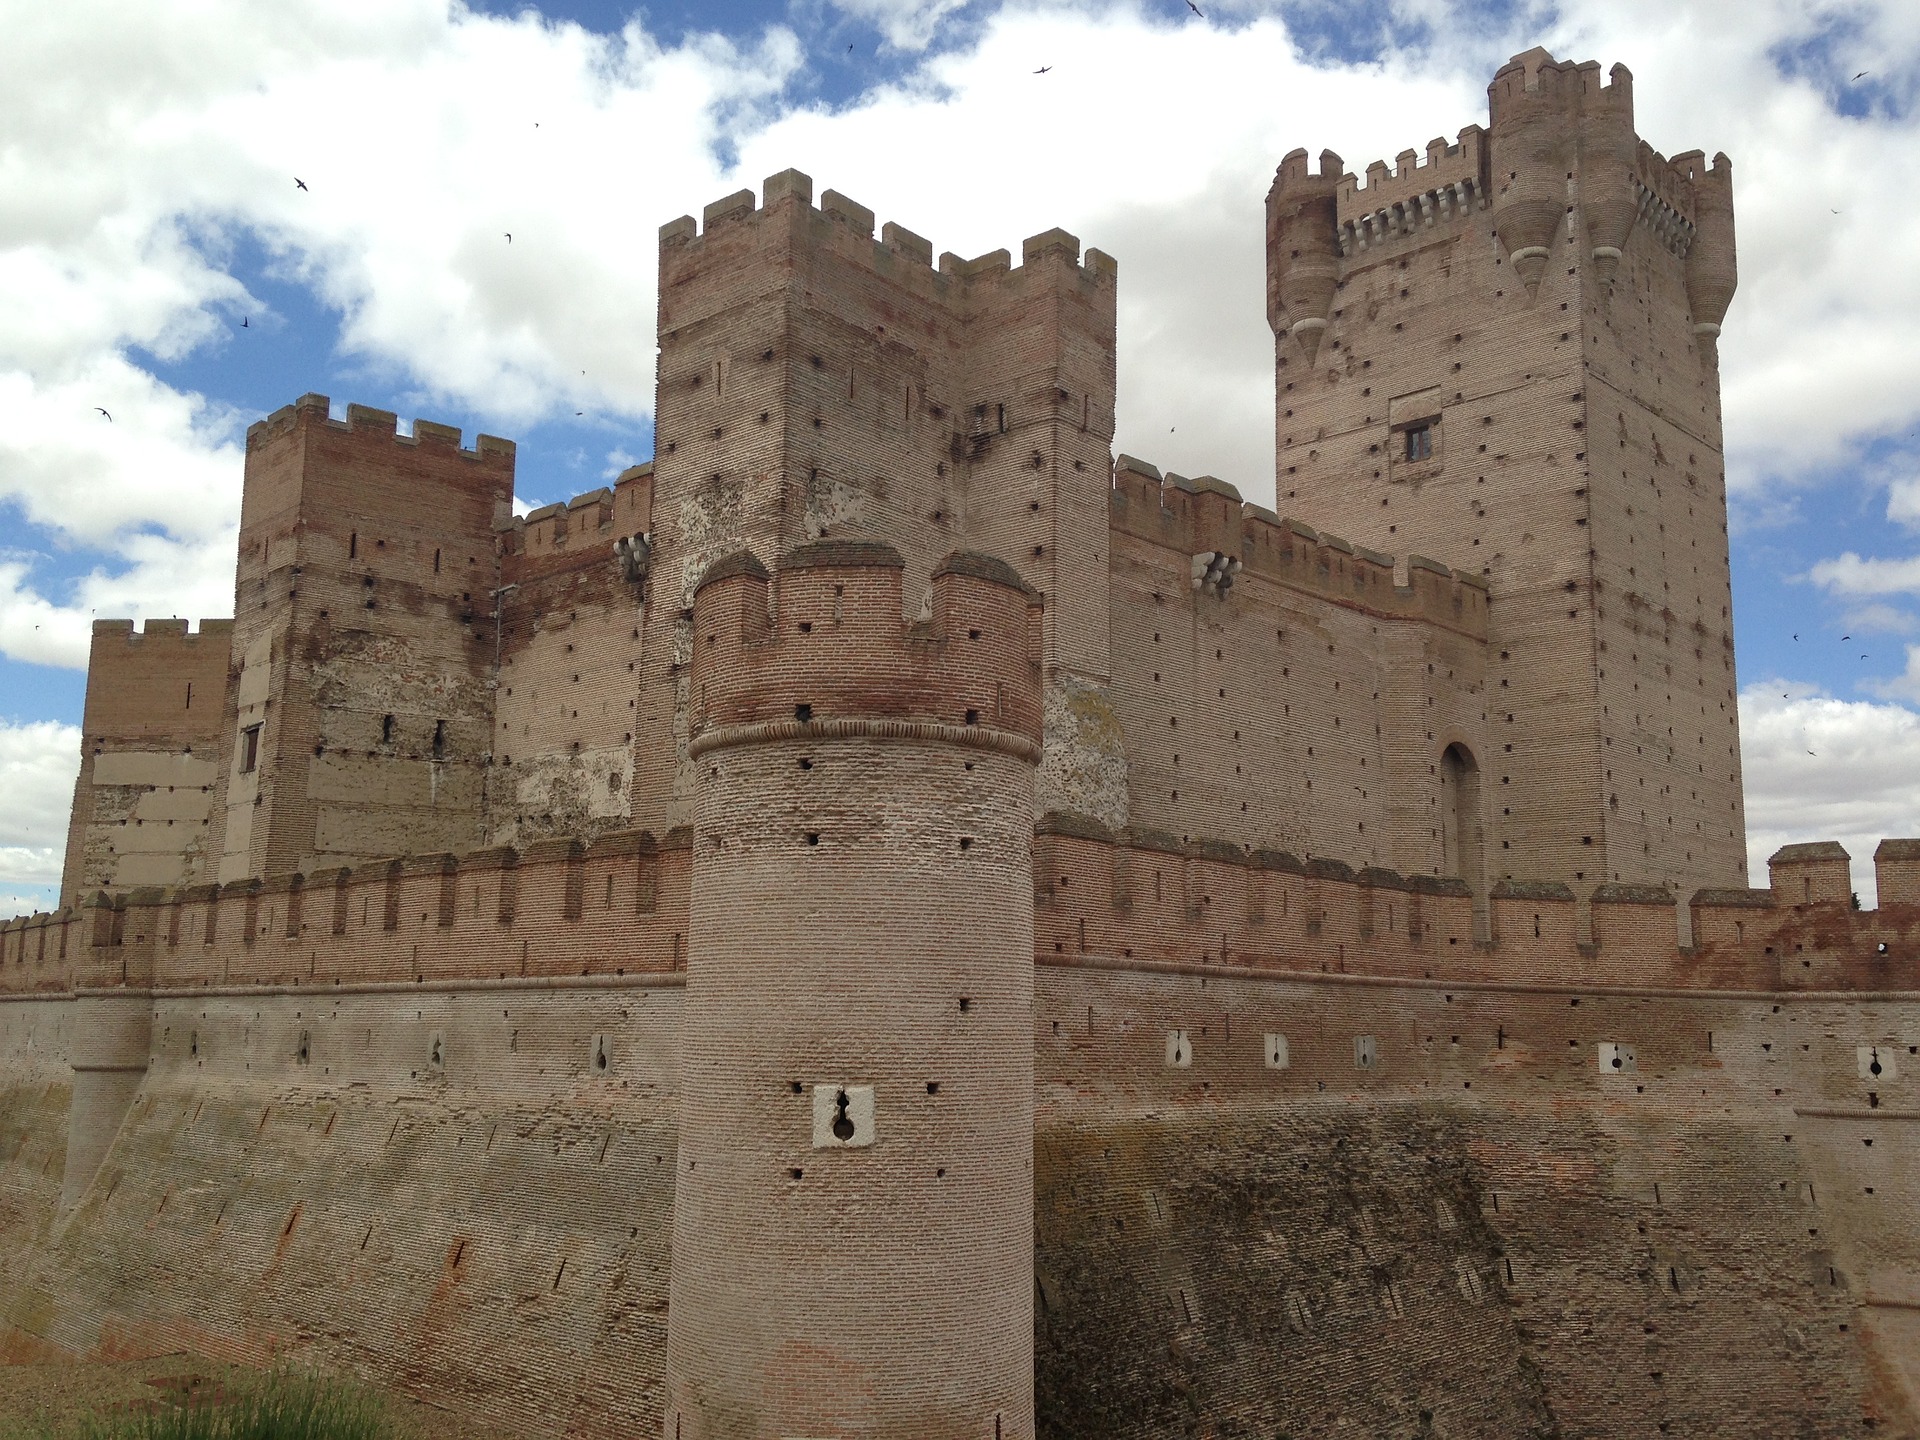 A medieval castle